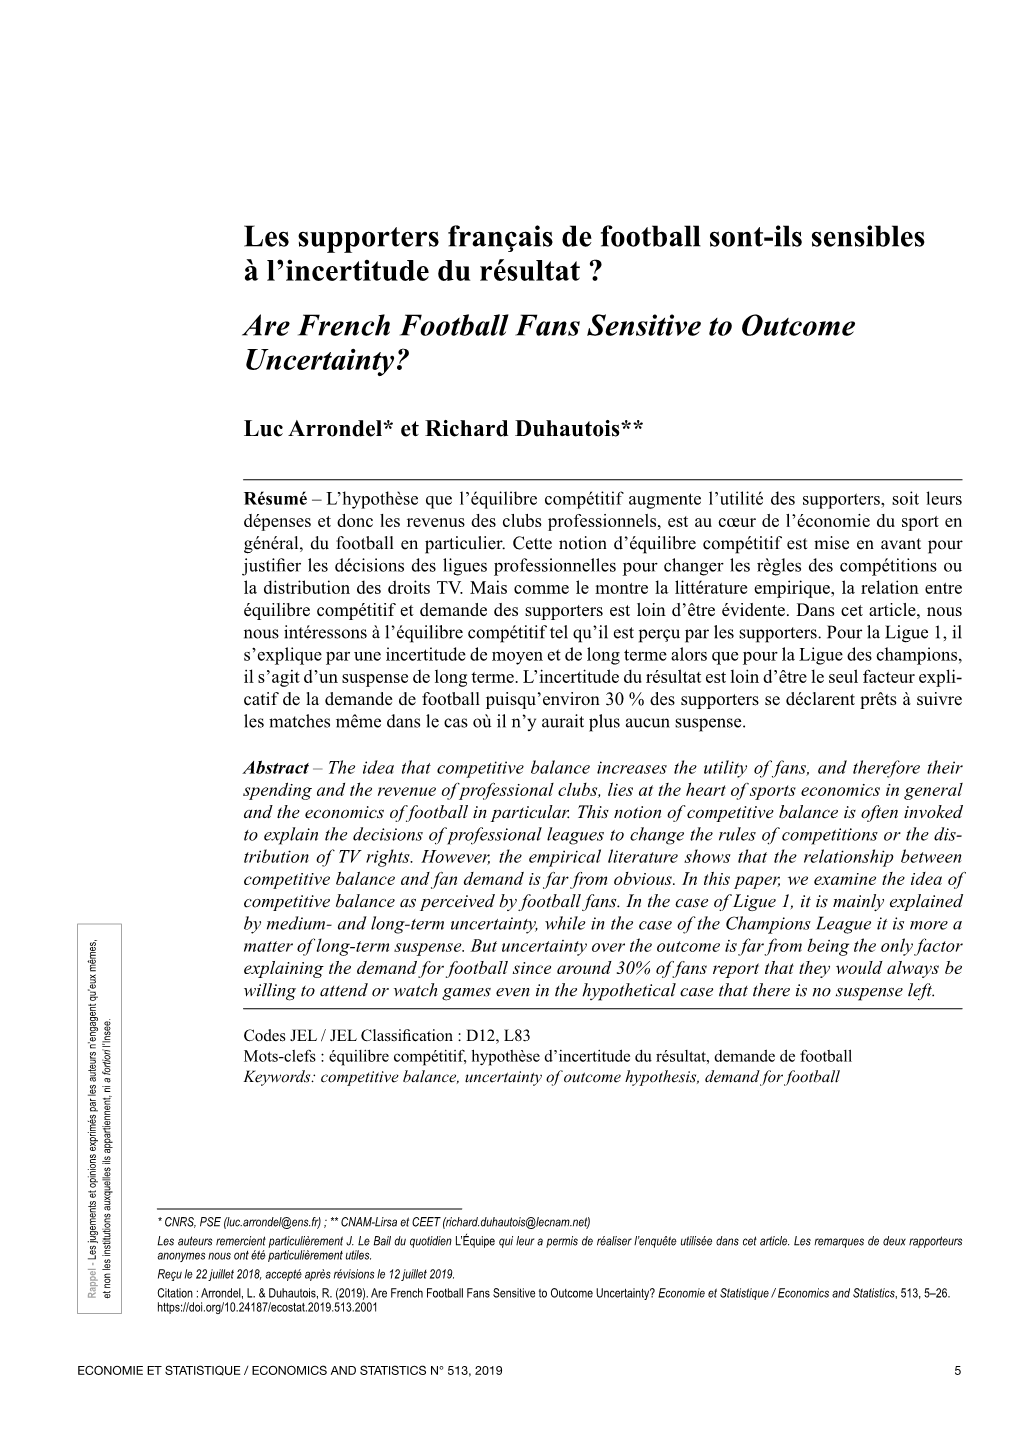 Les Supporters Français De Football Sont‑Ils Sensibles À L’Incertitude Du Résultat ? Are French Football Fans Sensitive to Outcome Uncertainty?